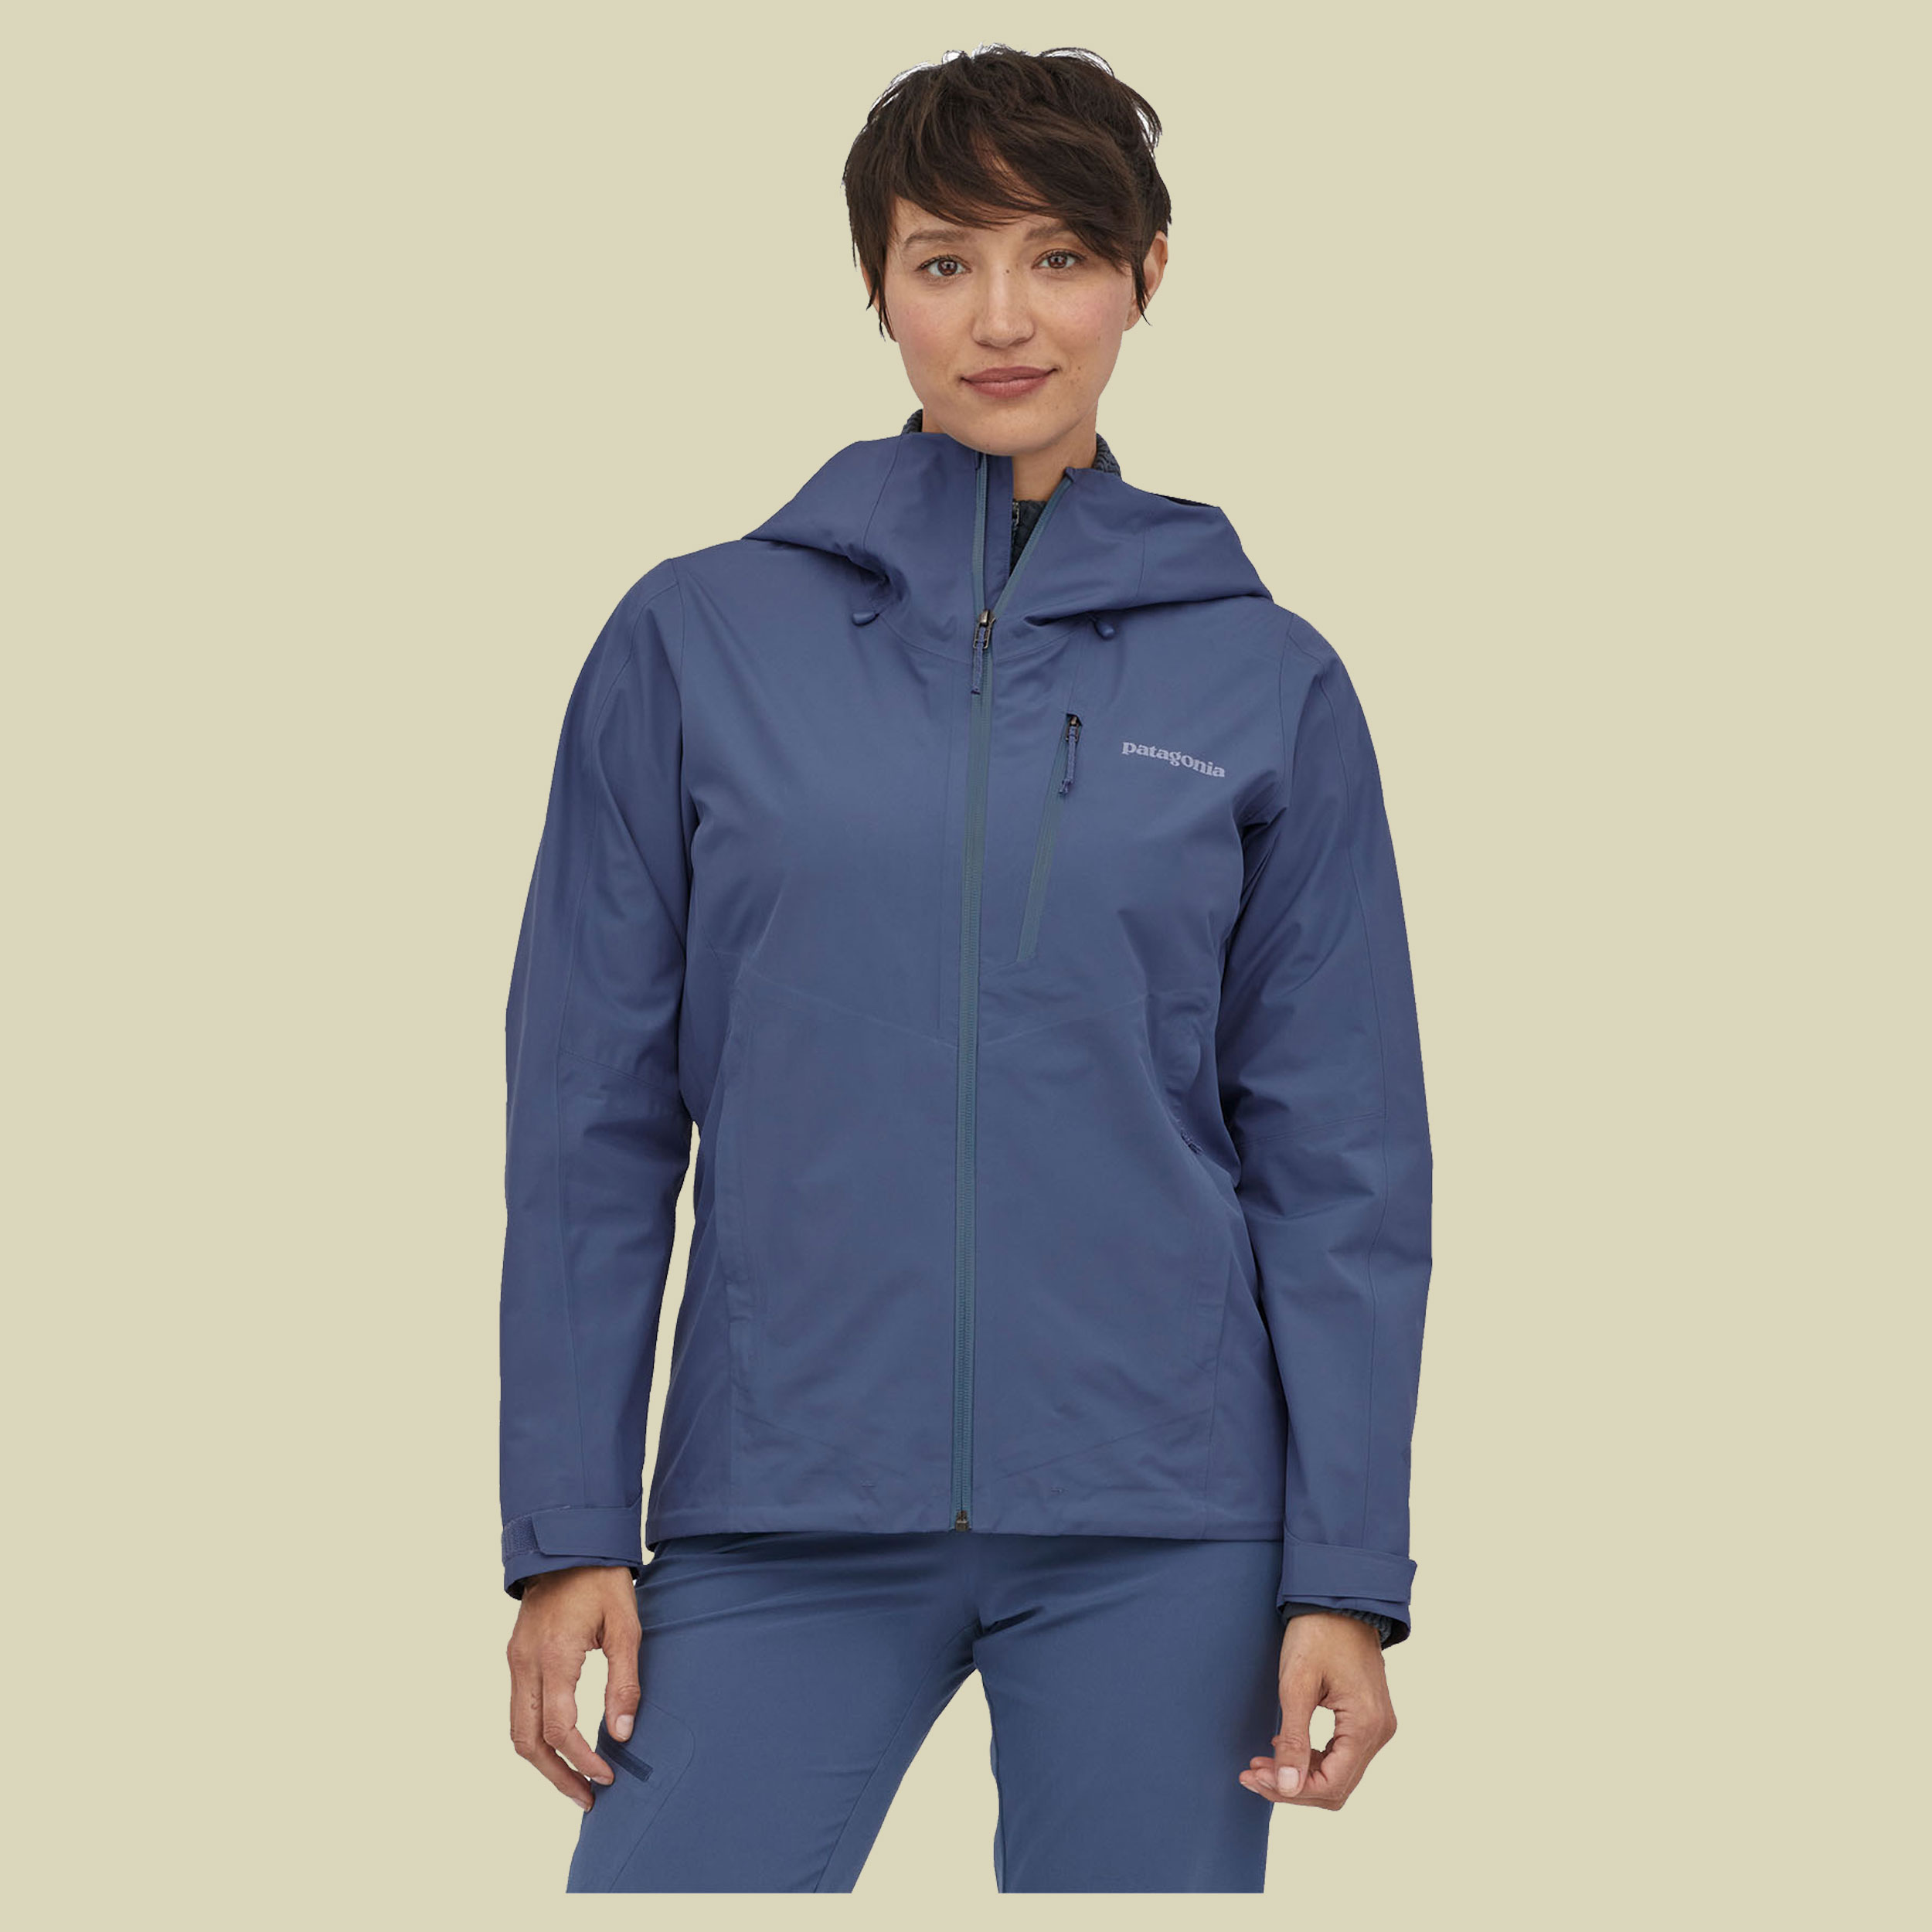 Calcite Jacket Women Größe XL Farbe current blue